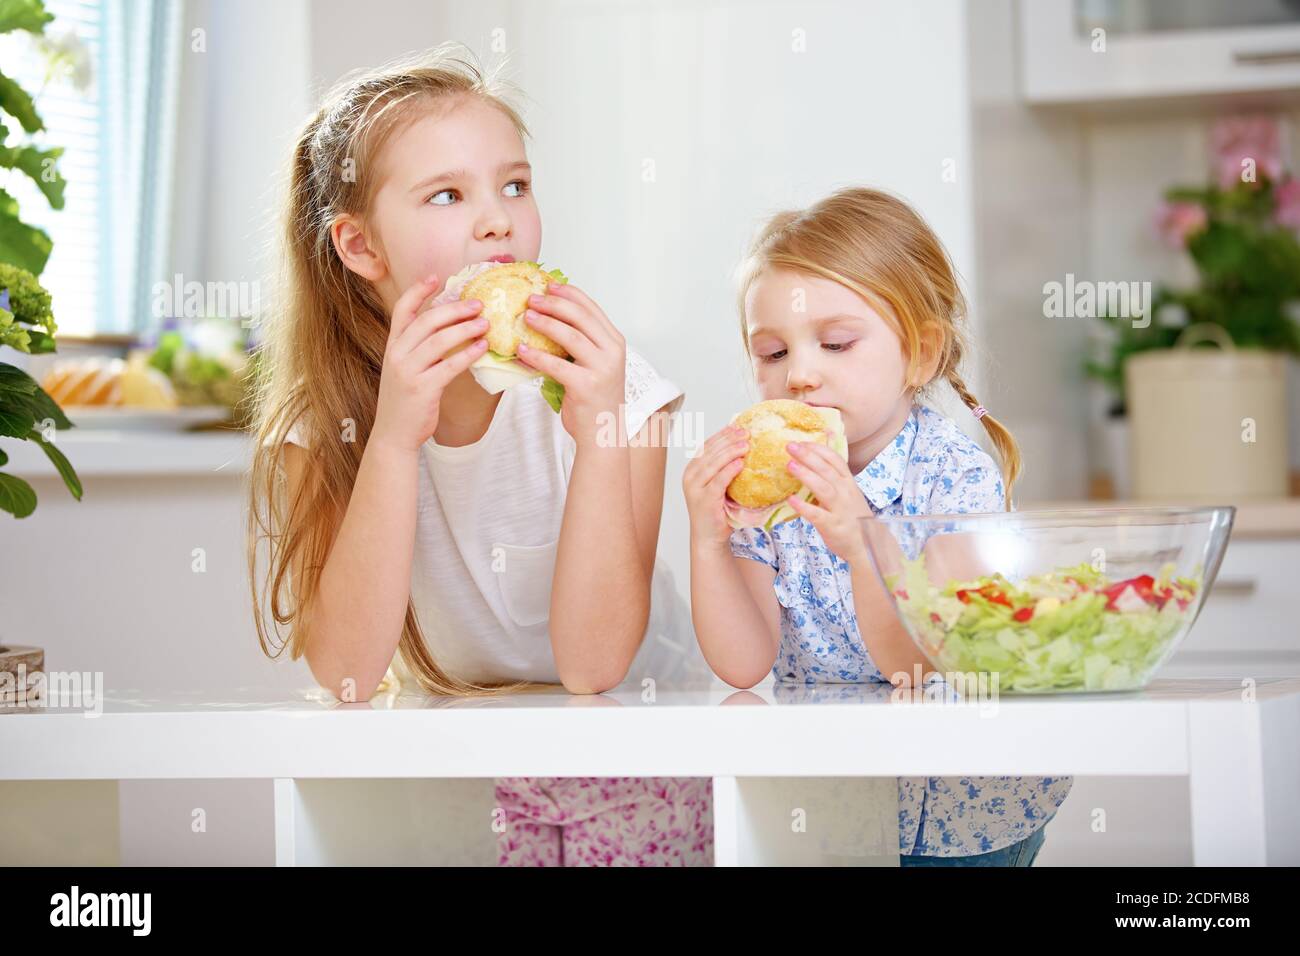 Les filles mangent des sandwiches pour le petit-déjeuner dans la cuisine à côté une salade Banque D'Images